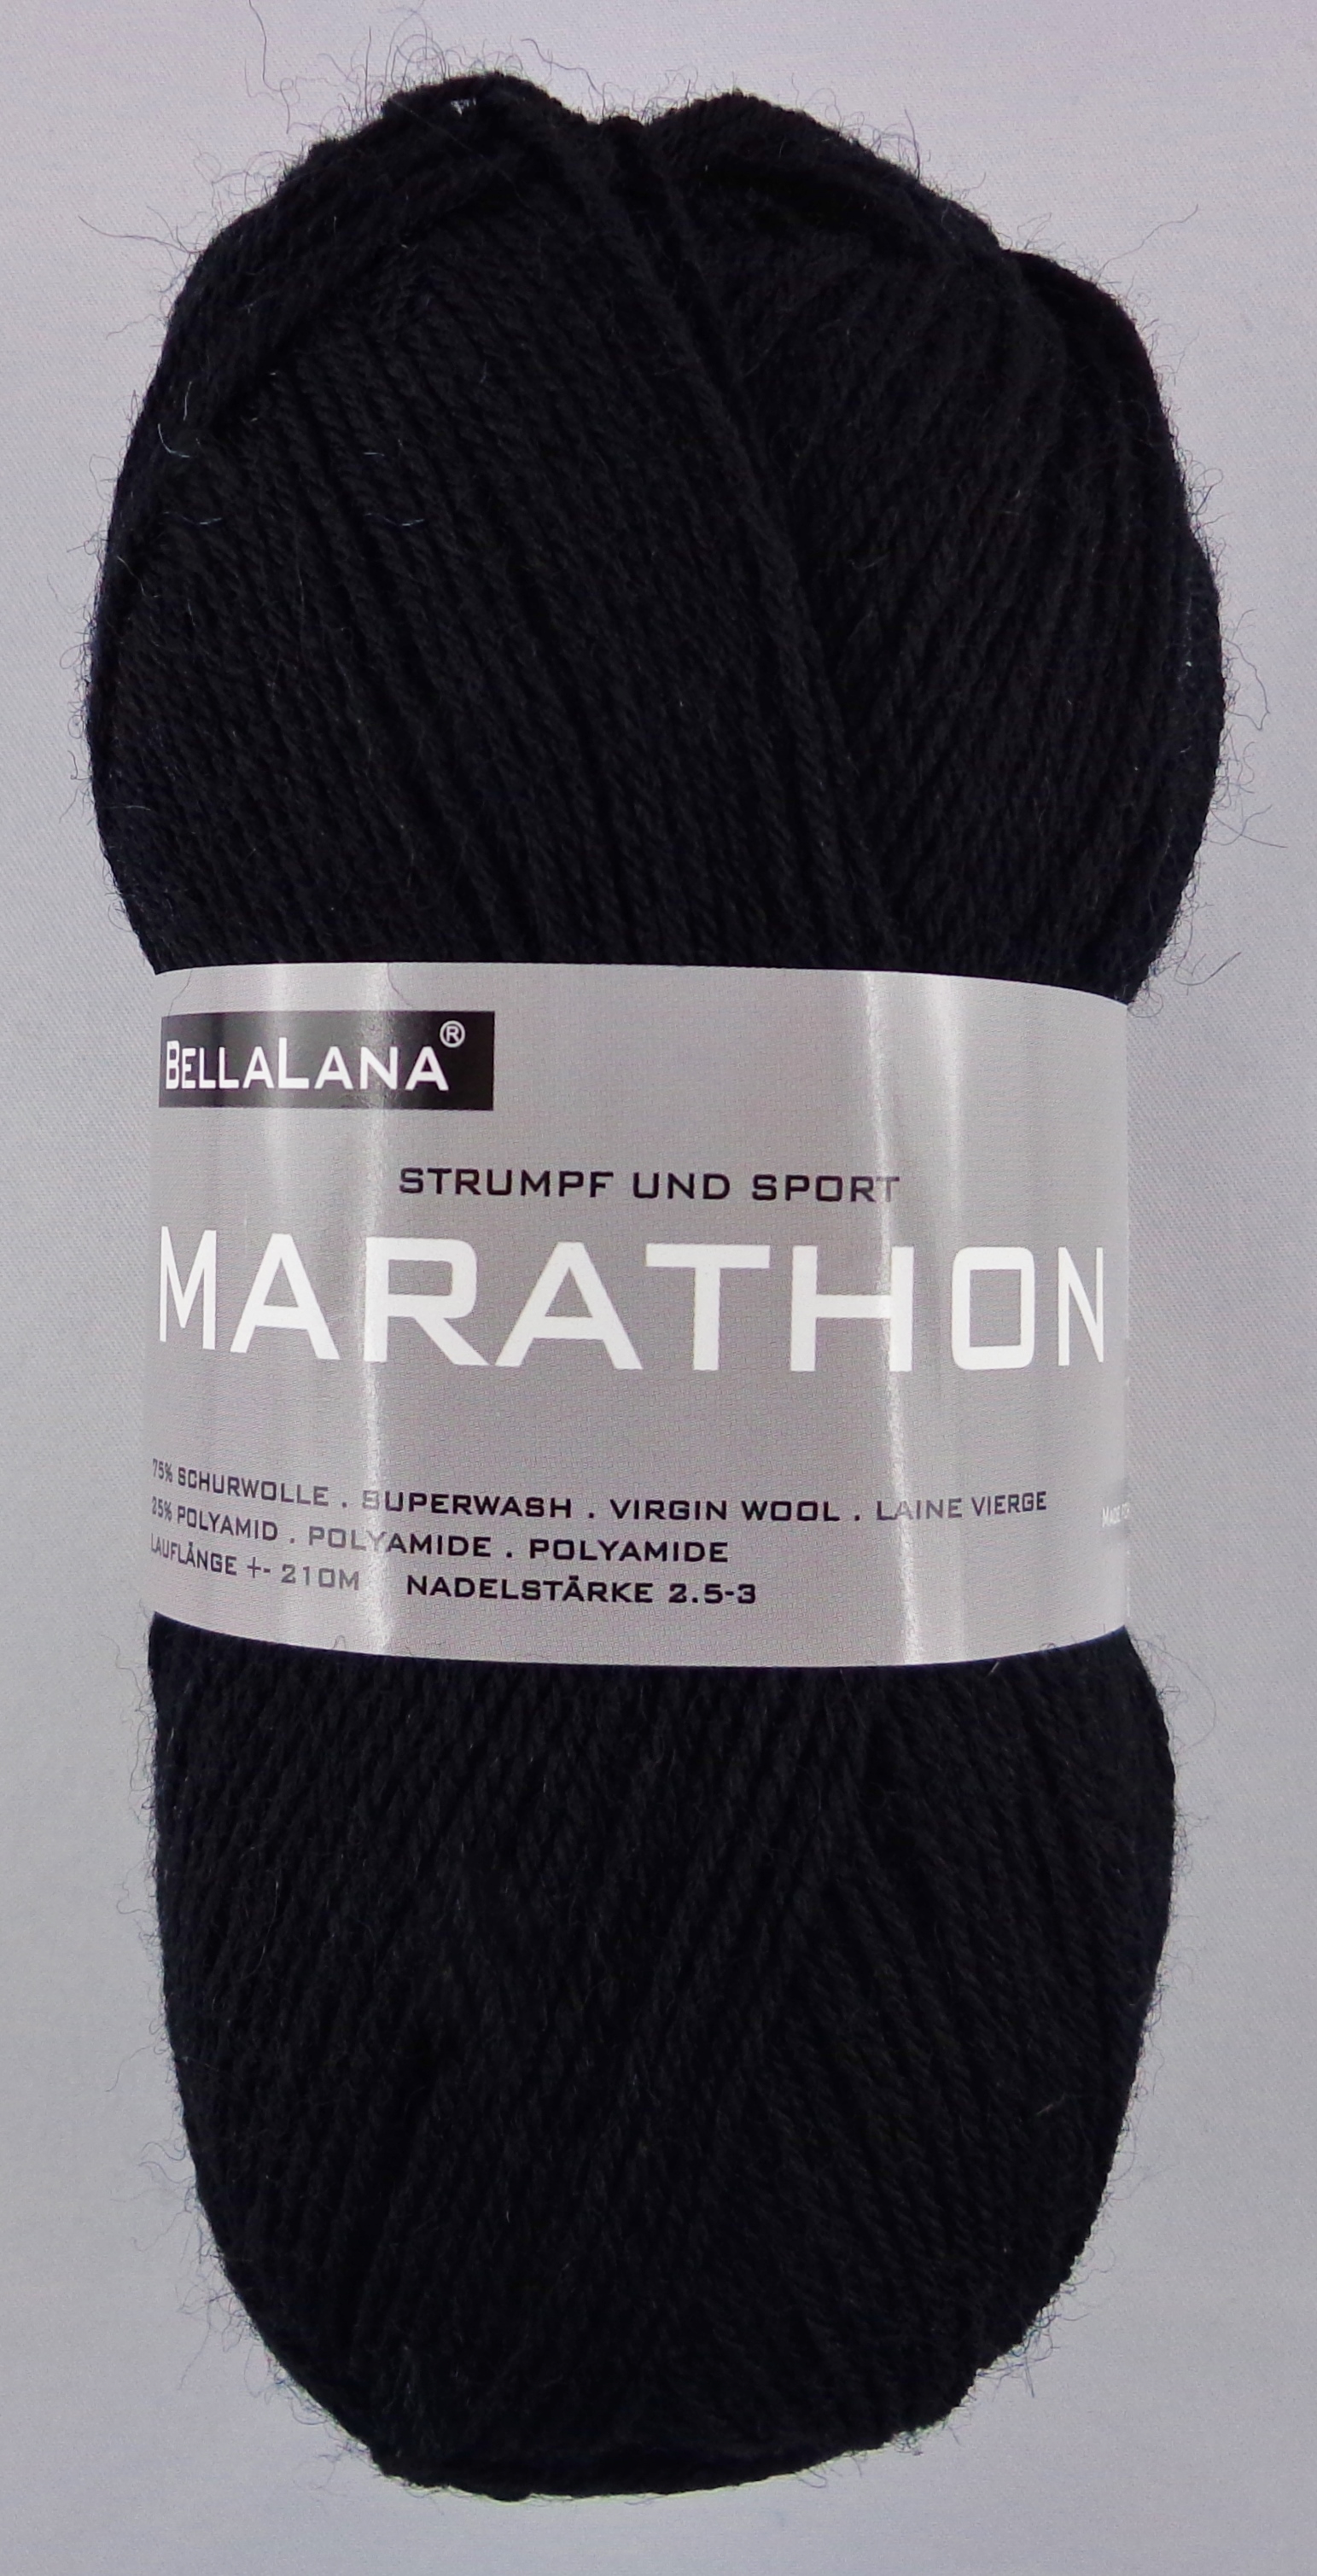 BellaLana Marathon 4-fach Sockenwolle Garn Stricken Häkeln 39,80€/1kg |